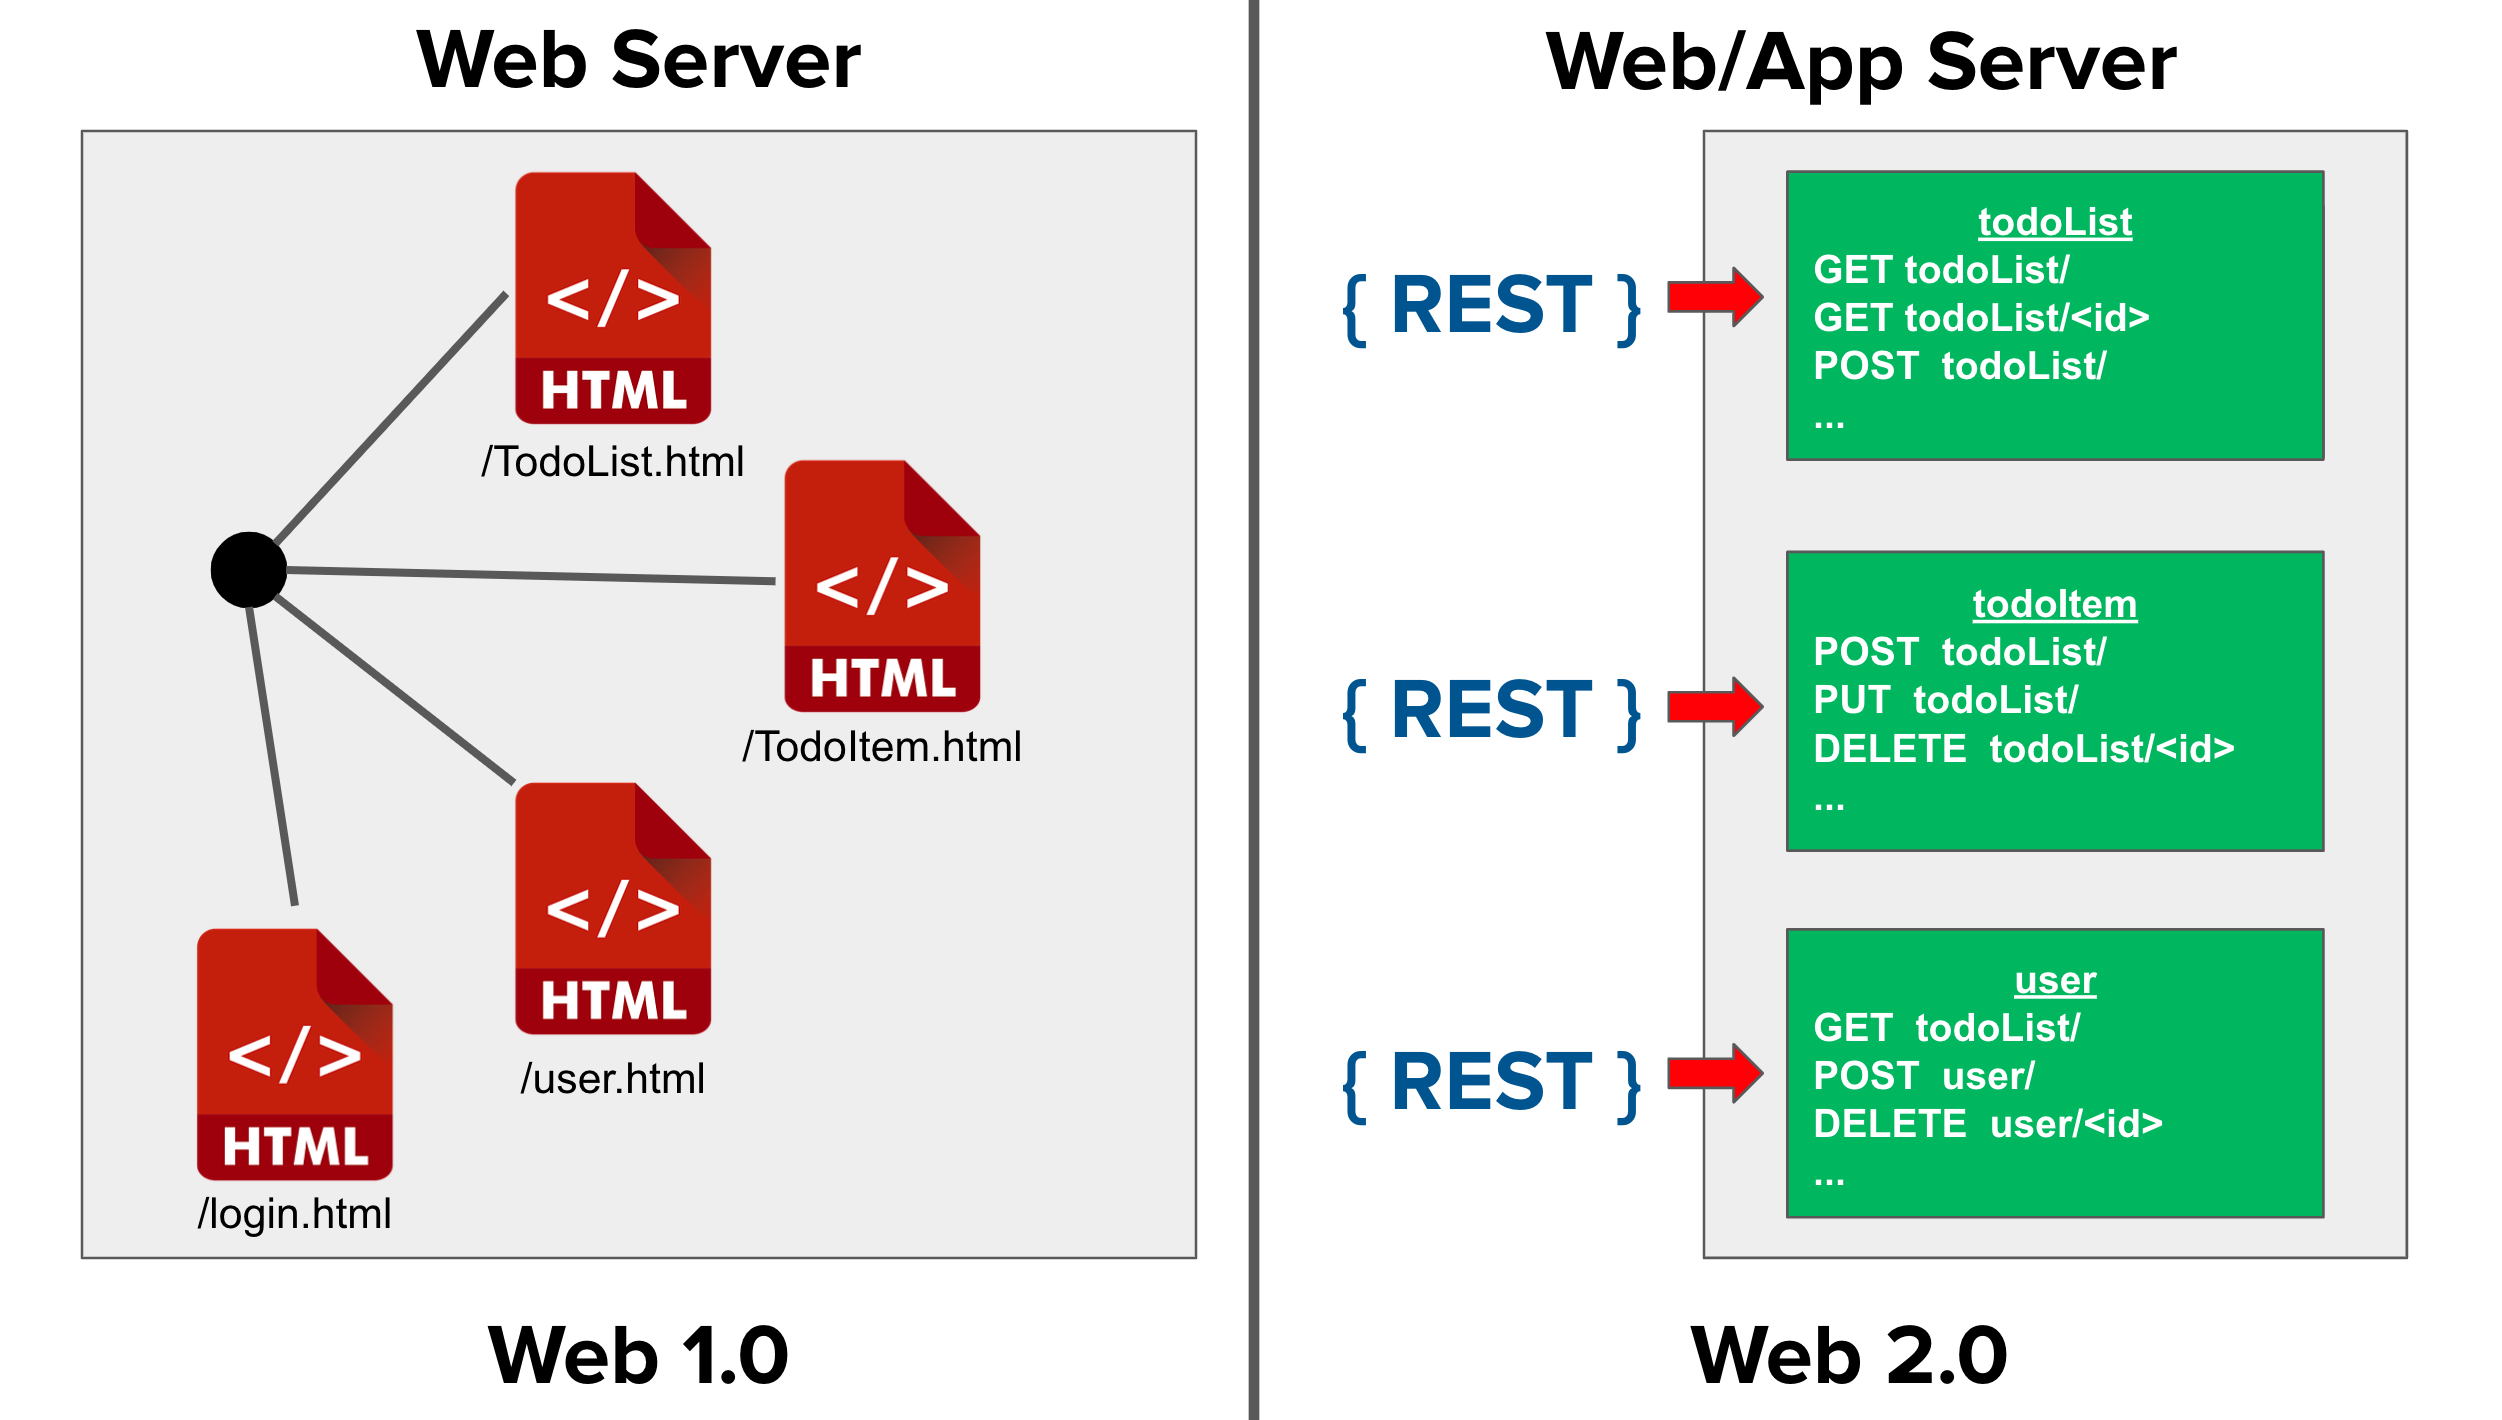 Web 1.0 vs Web 2.0 Server Requests